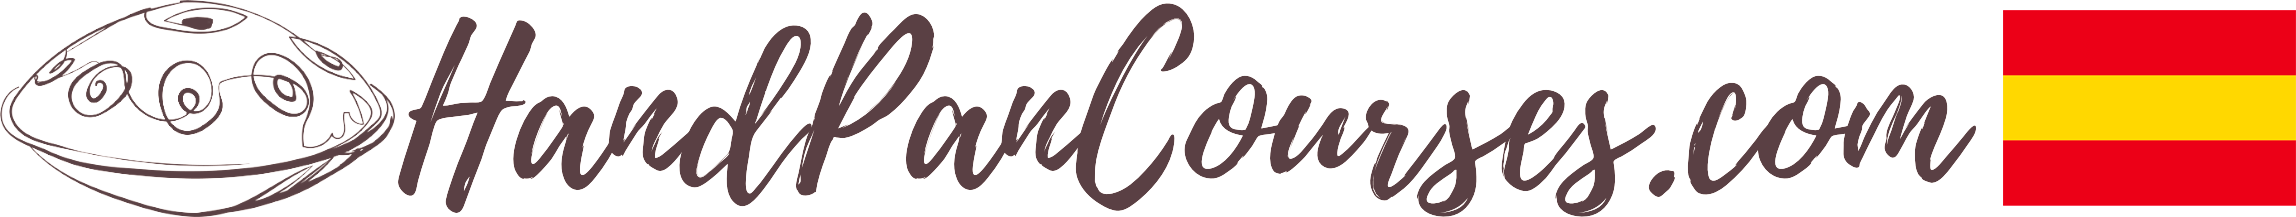 Handpancourses.com/ES logo